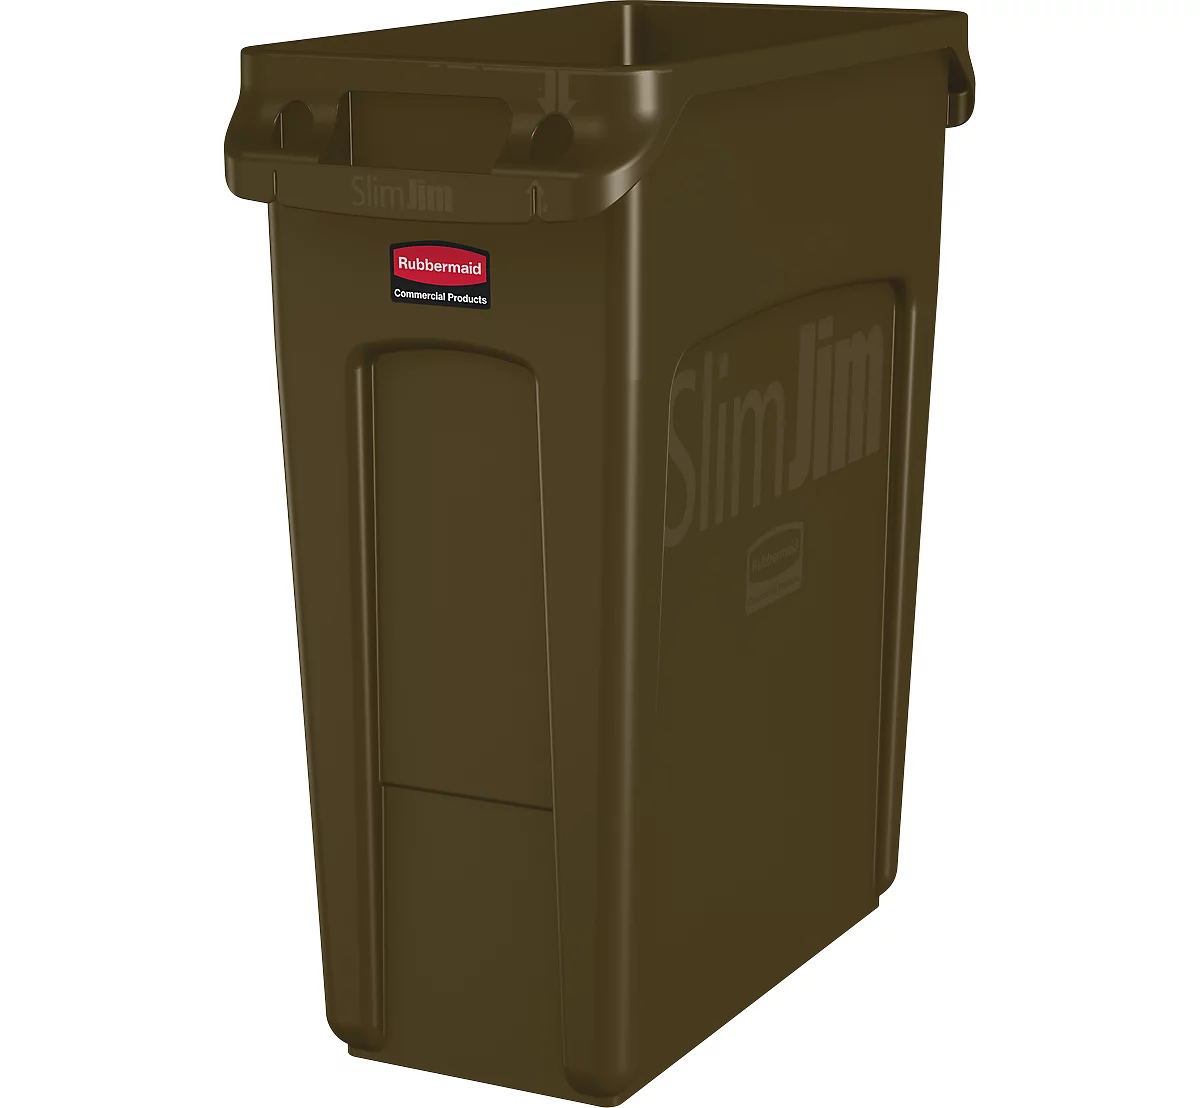 Cubo de basura Slim Jim®, plástico, capacidad 60 l, marrón